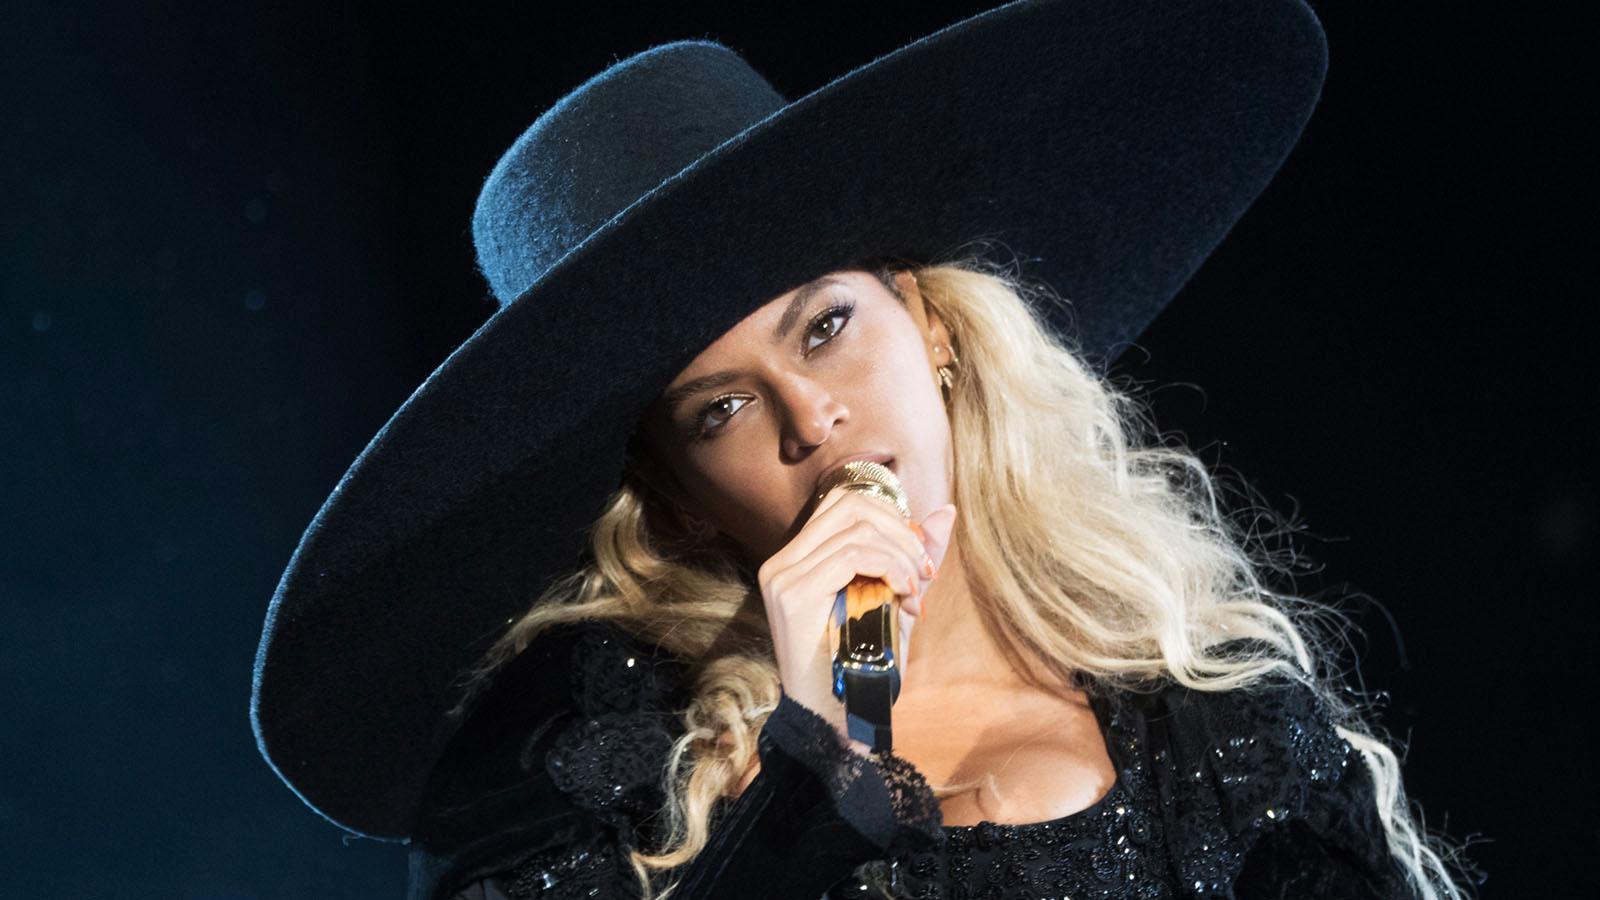 Beyoncé ryktas vara aktuell för titellåten.